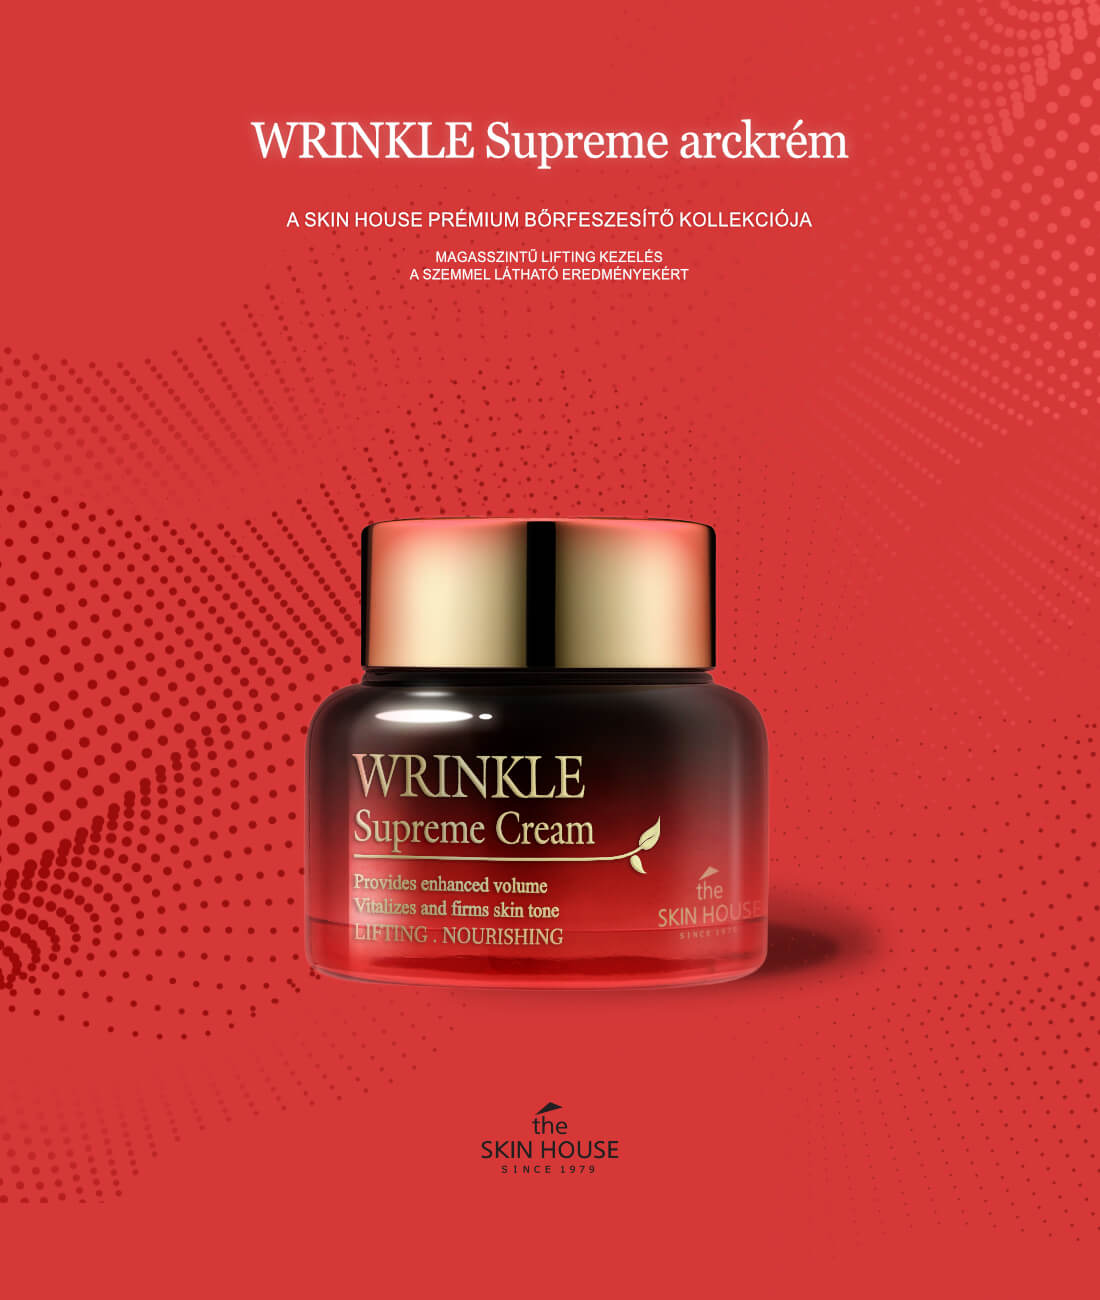 theskinhouse-wrinke-supreme-arckrem-des-01